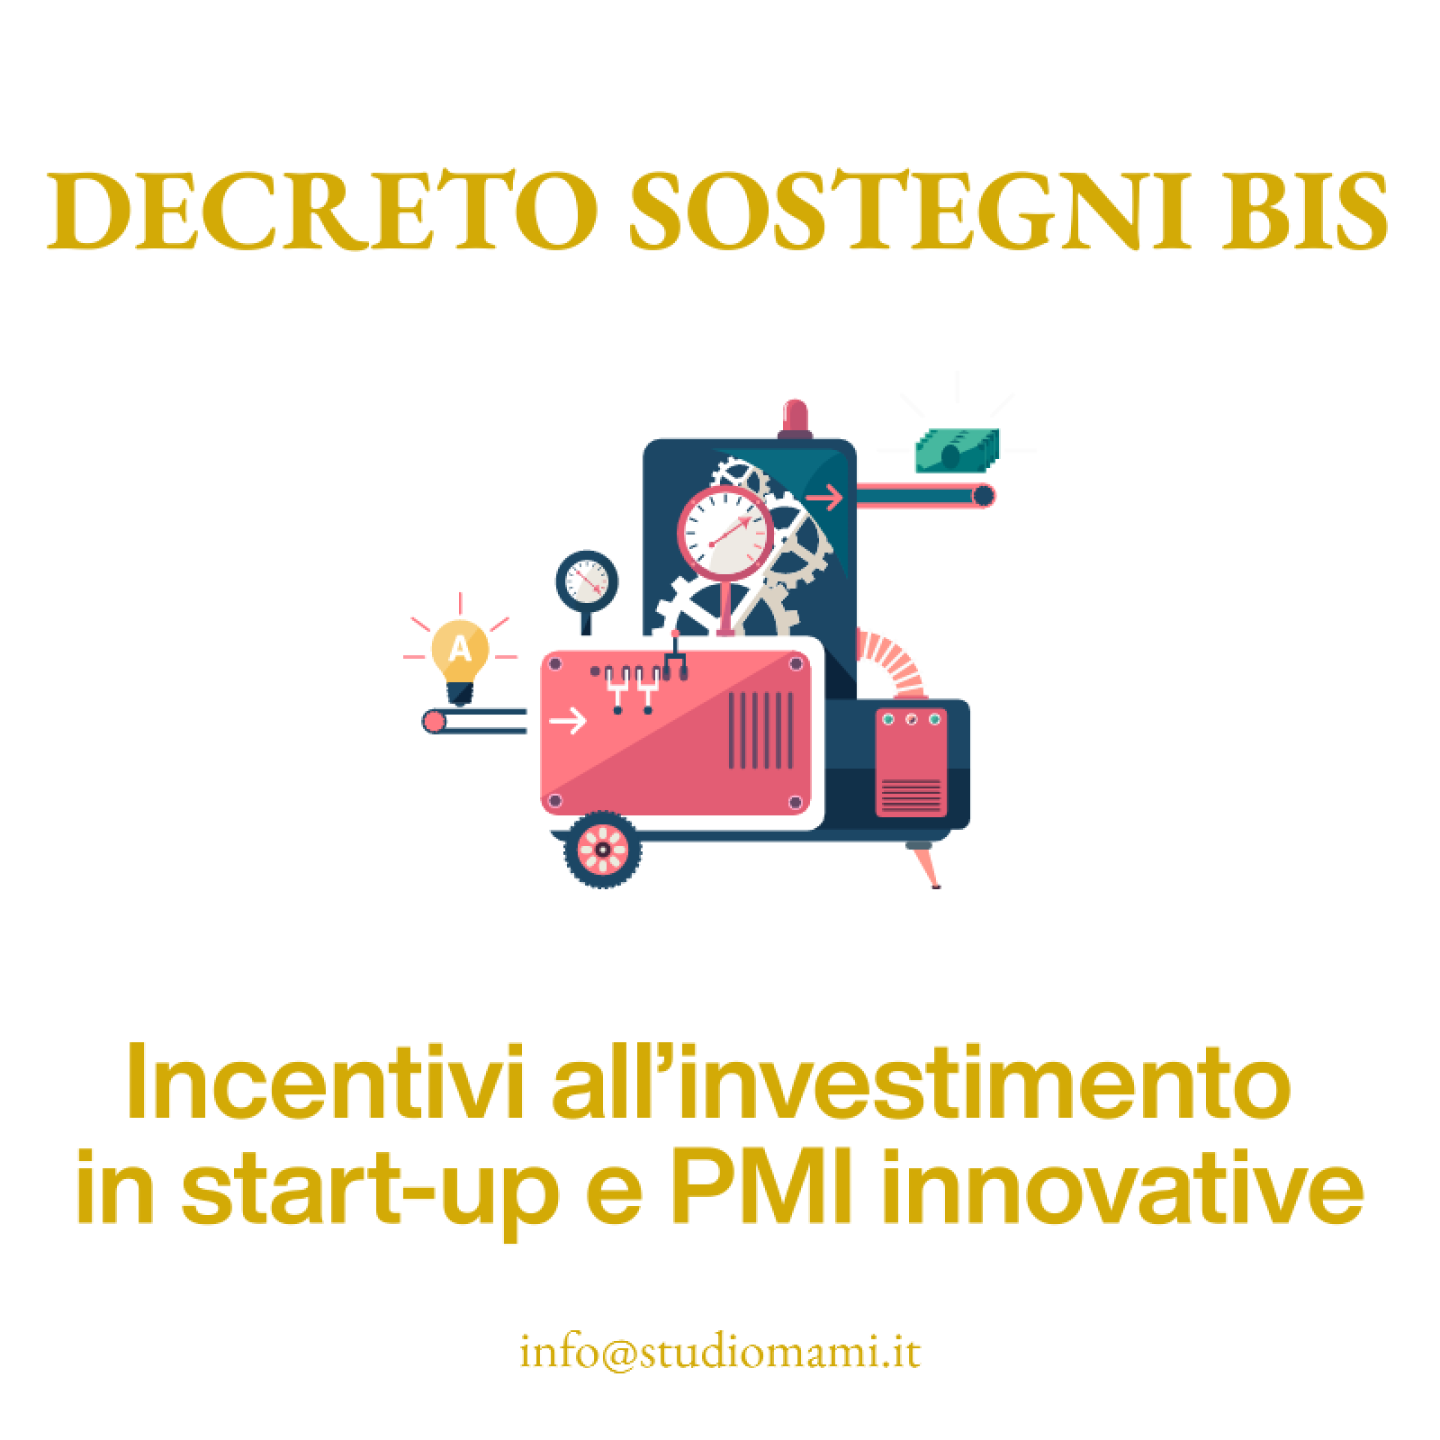 Incentivi all’investimento in start-up e PMI innovative